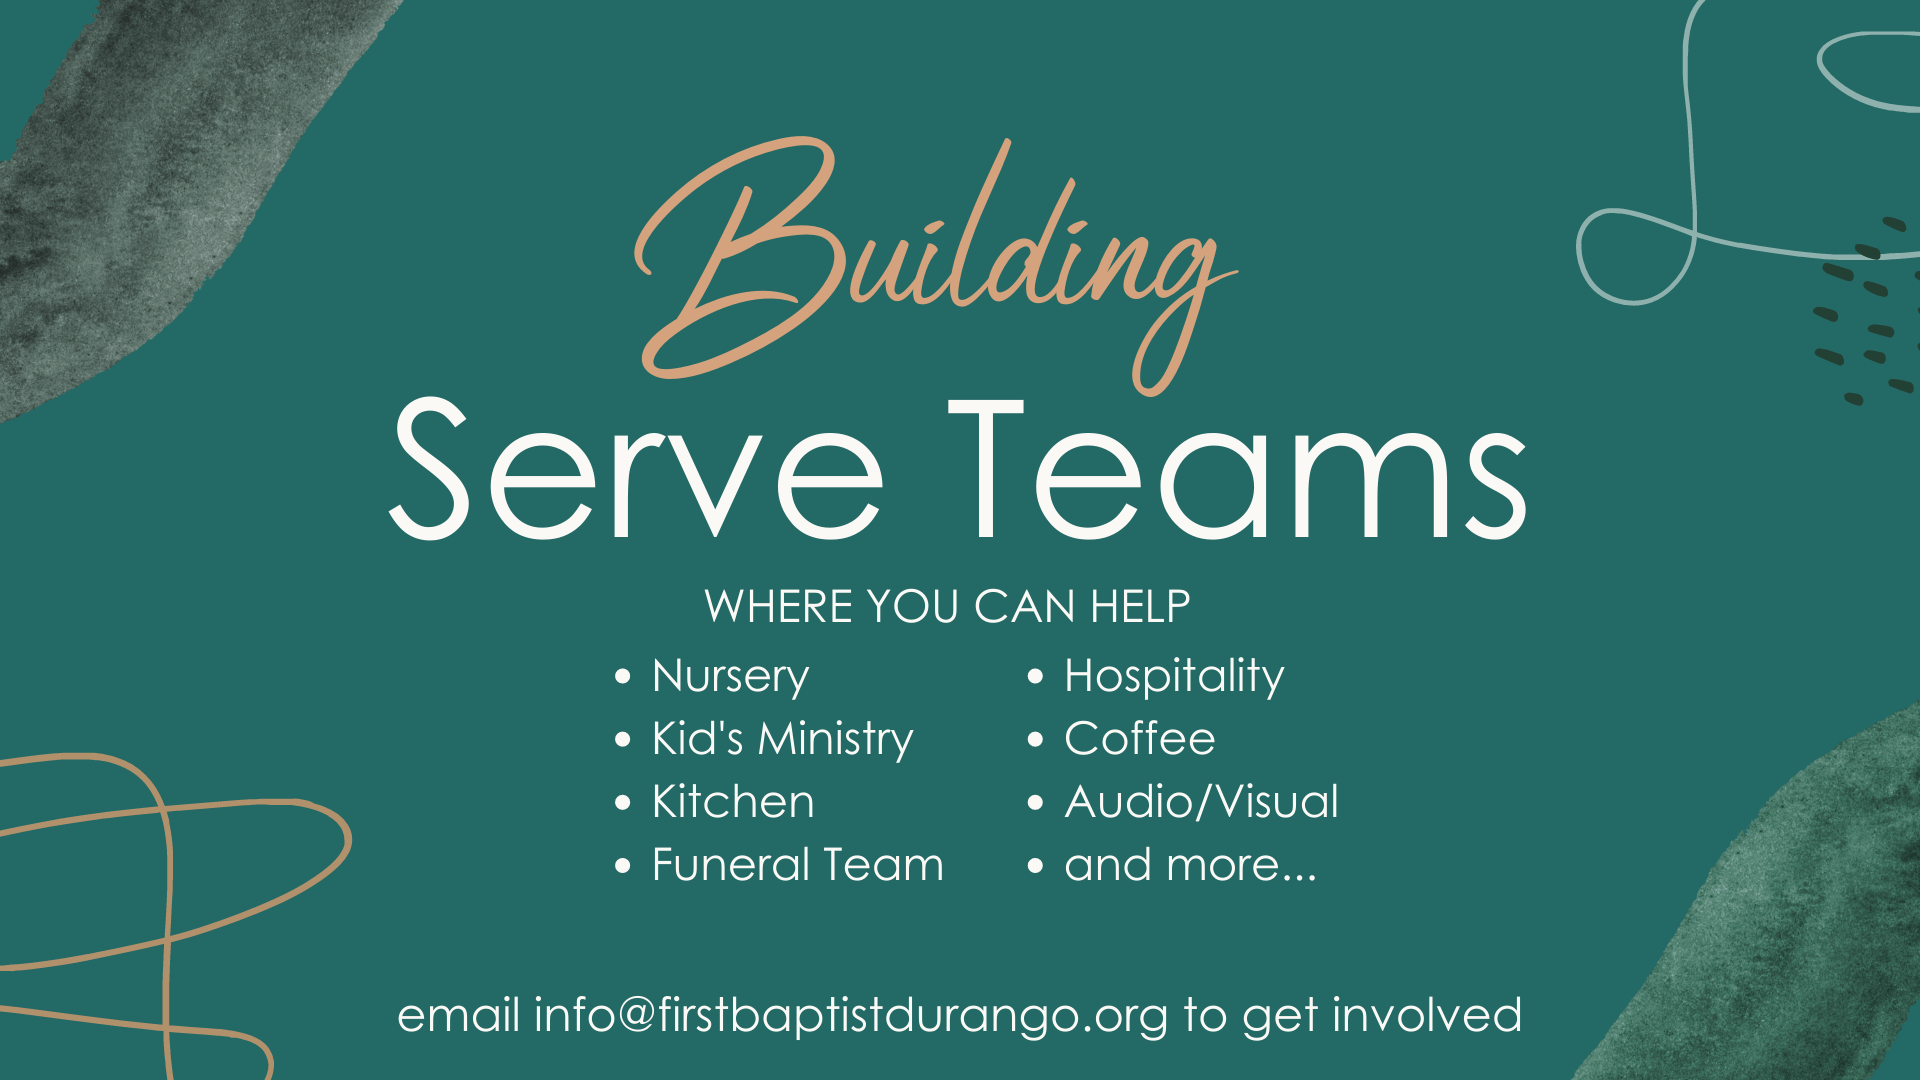 We’re Building our Serve Teams